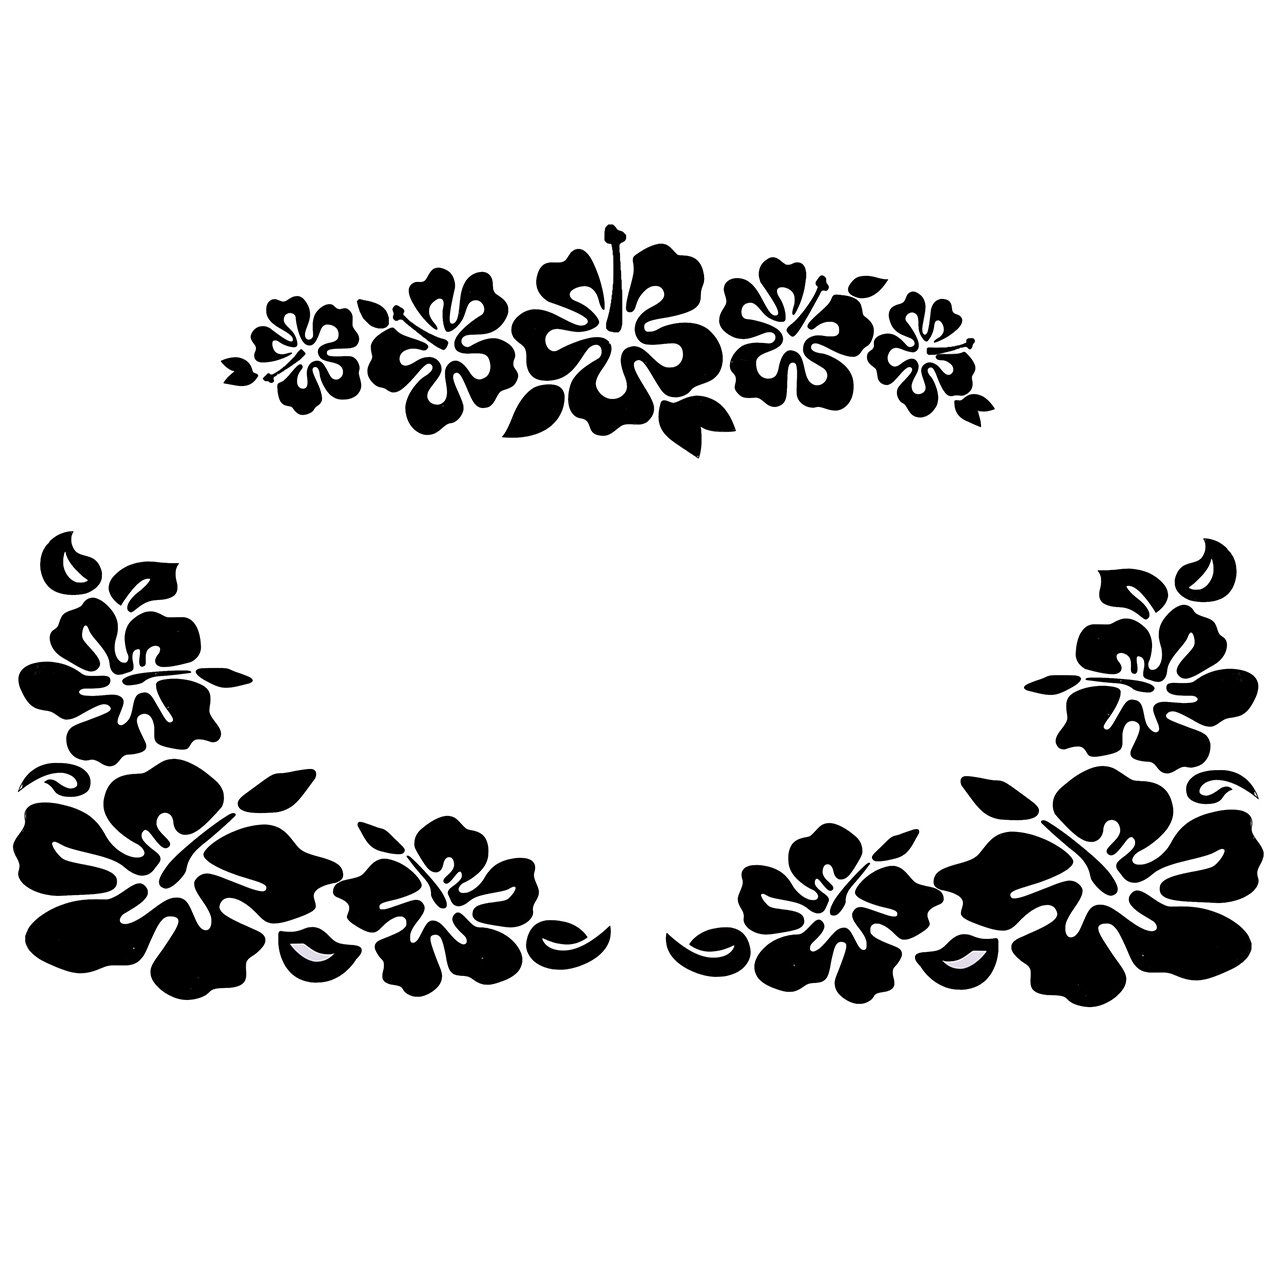 ACBungji Hibiskus Autoaufkleber Blumen blumenaufkleber autotattoos selbstklebend Aufkleber Fenster Schwarz Weiß wasserfest (Schwarz Blume) von ACBungji